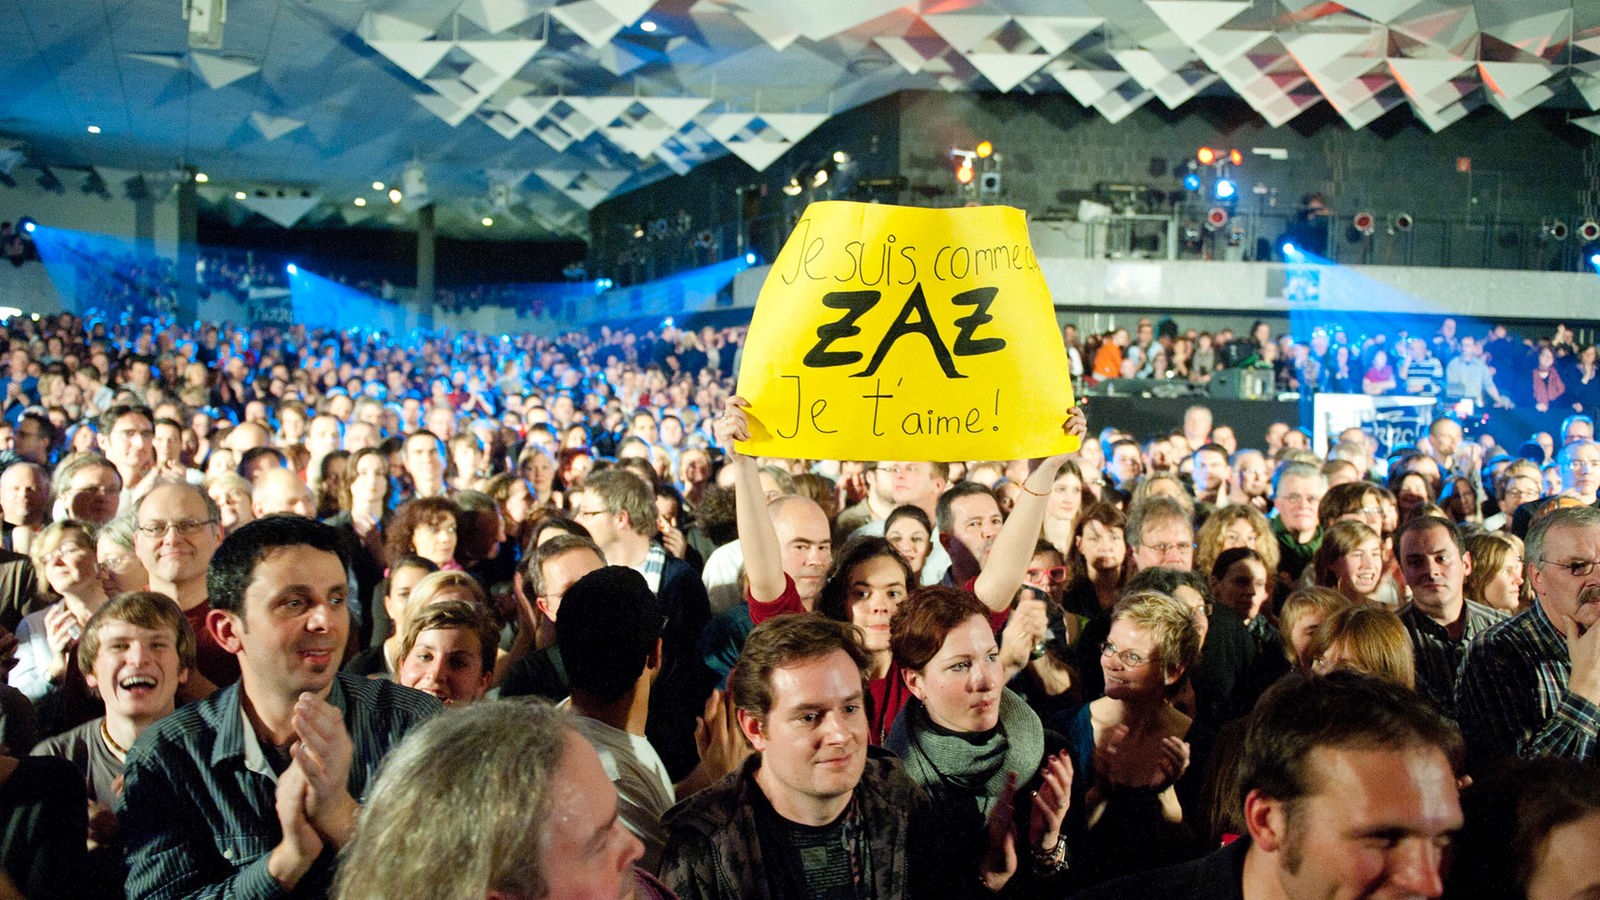 Mit Menschen gefüllte Halle, ein Mädchen hält ein gelbes Schild hochhält, auf dem steht "Je suis comme ZAZ Je t'aime!"